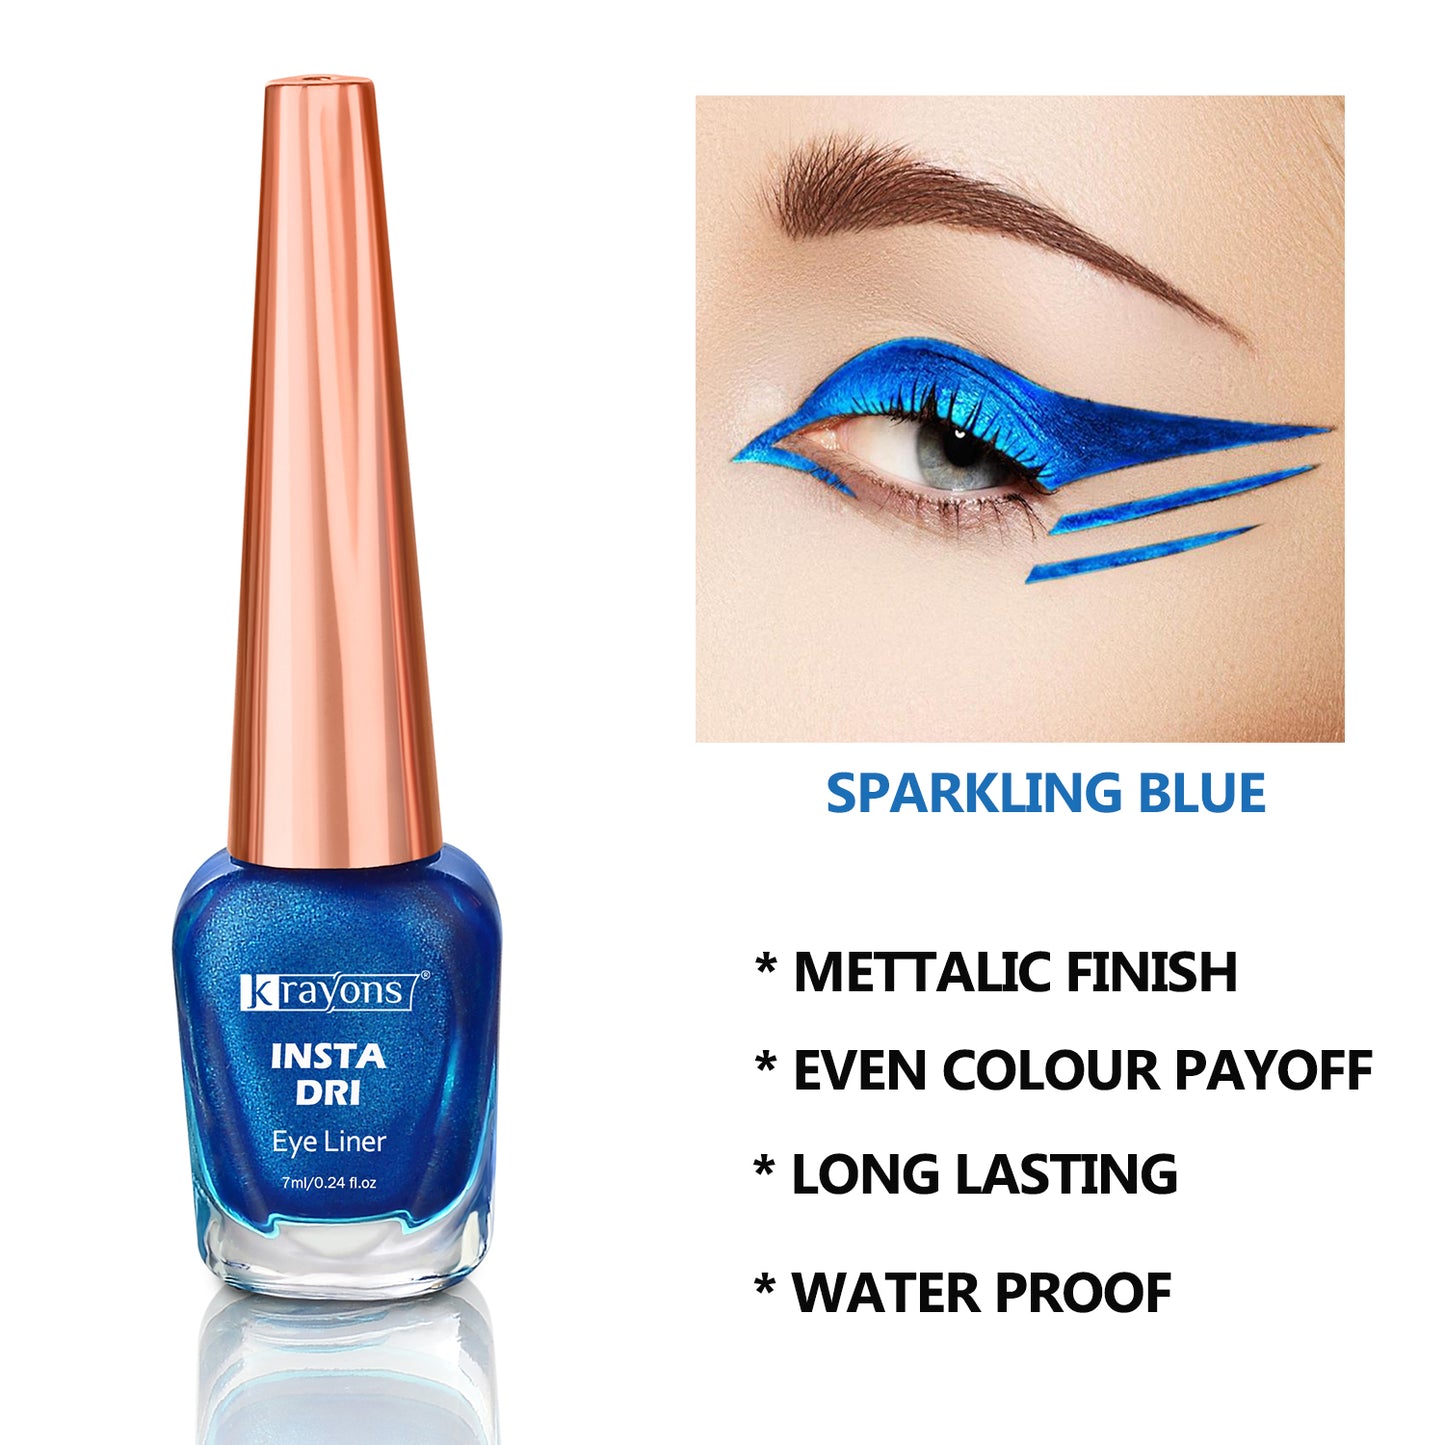 Krayons Insta Dri Sparkling Eyeliner, Black, Blue, Waterproof, Longlasting, 7ml Each, Combo (Pack of 2)